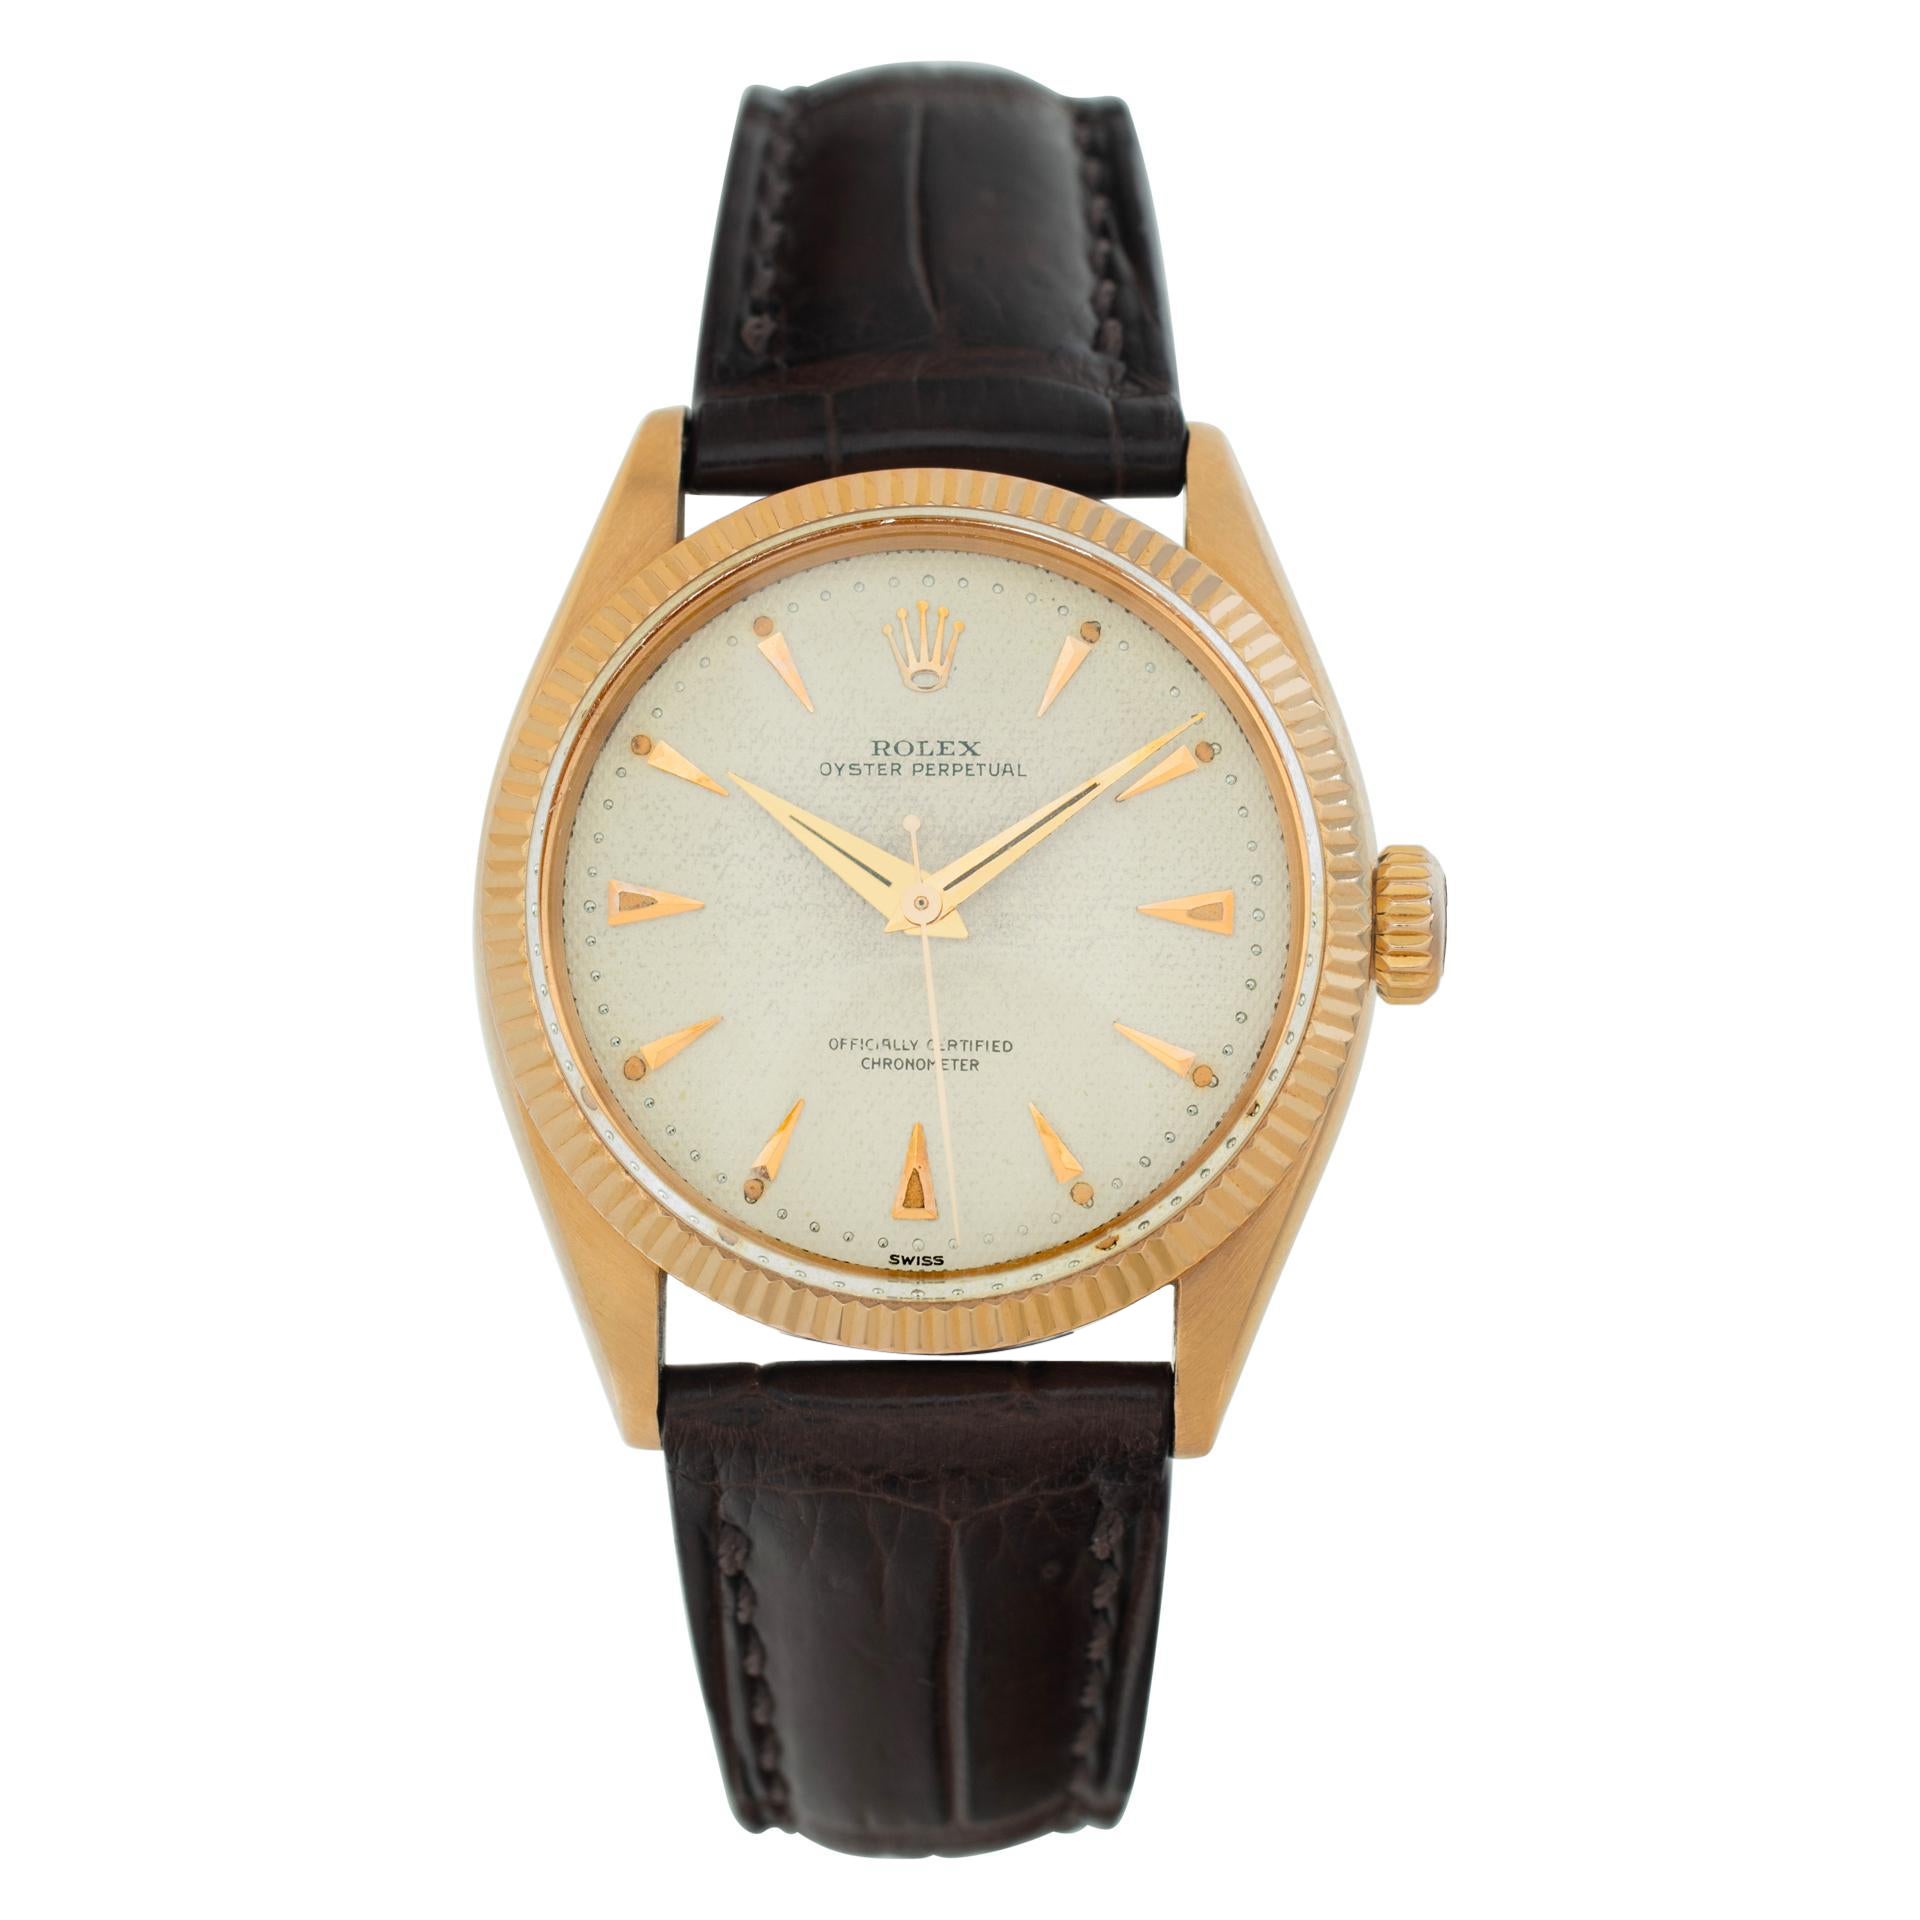 Reloj de pulsera automático Rolex Oyster Perpetual de oro rosa de 18 quilates Ref 6285 en venta